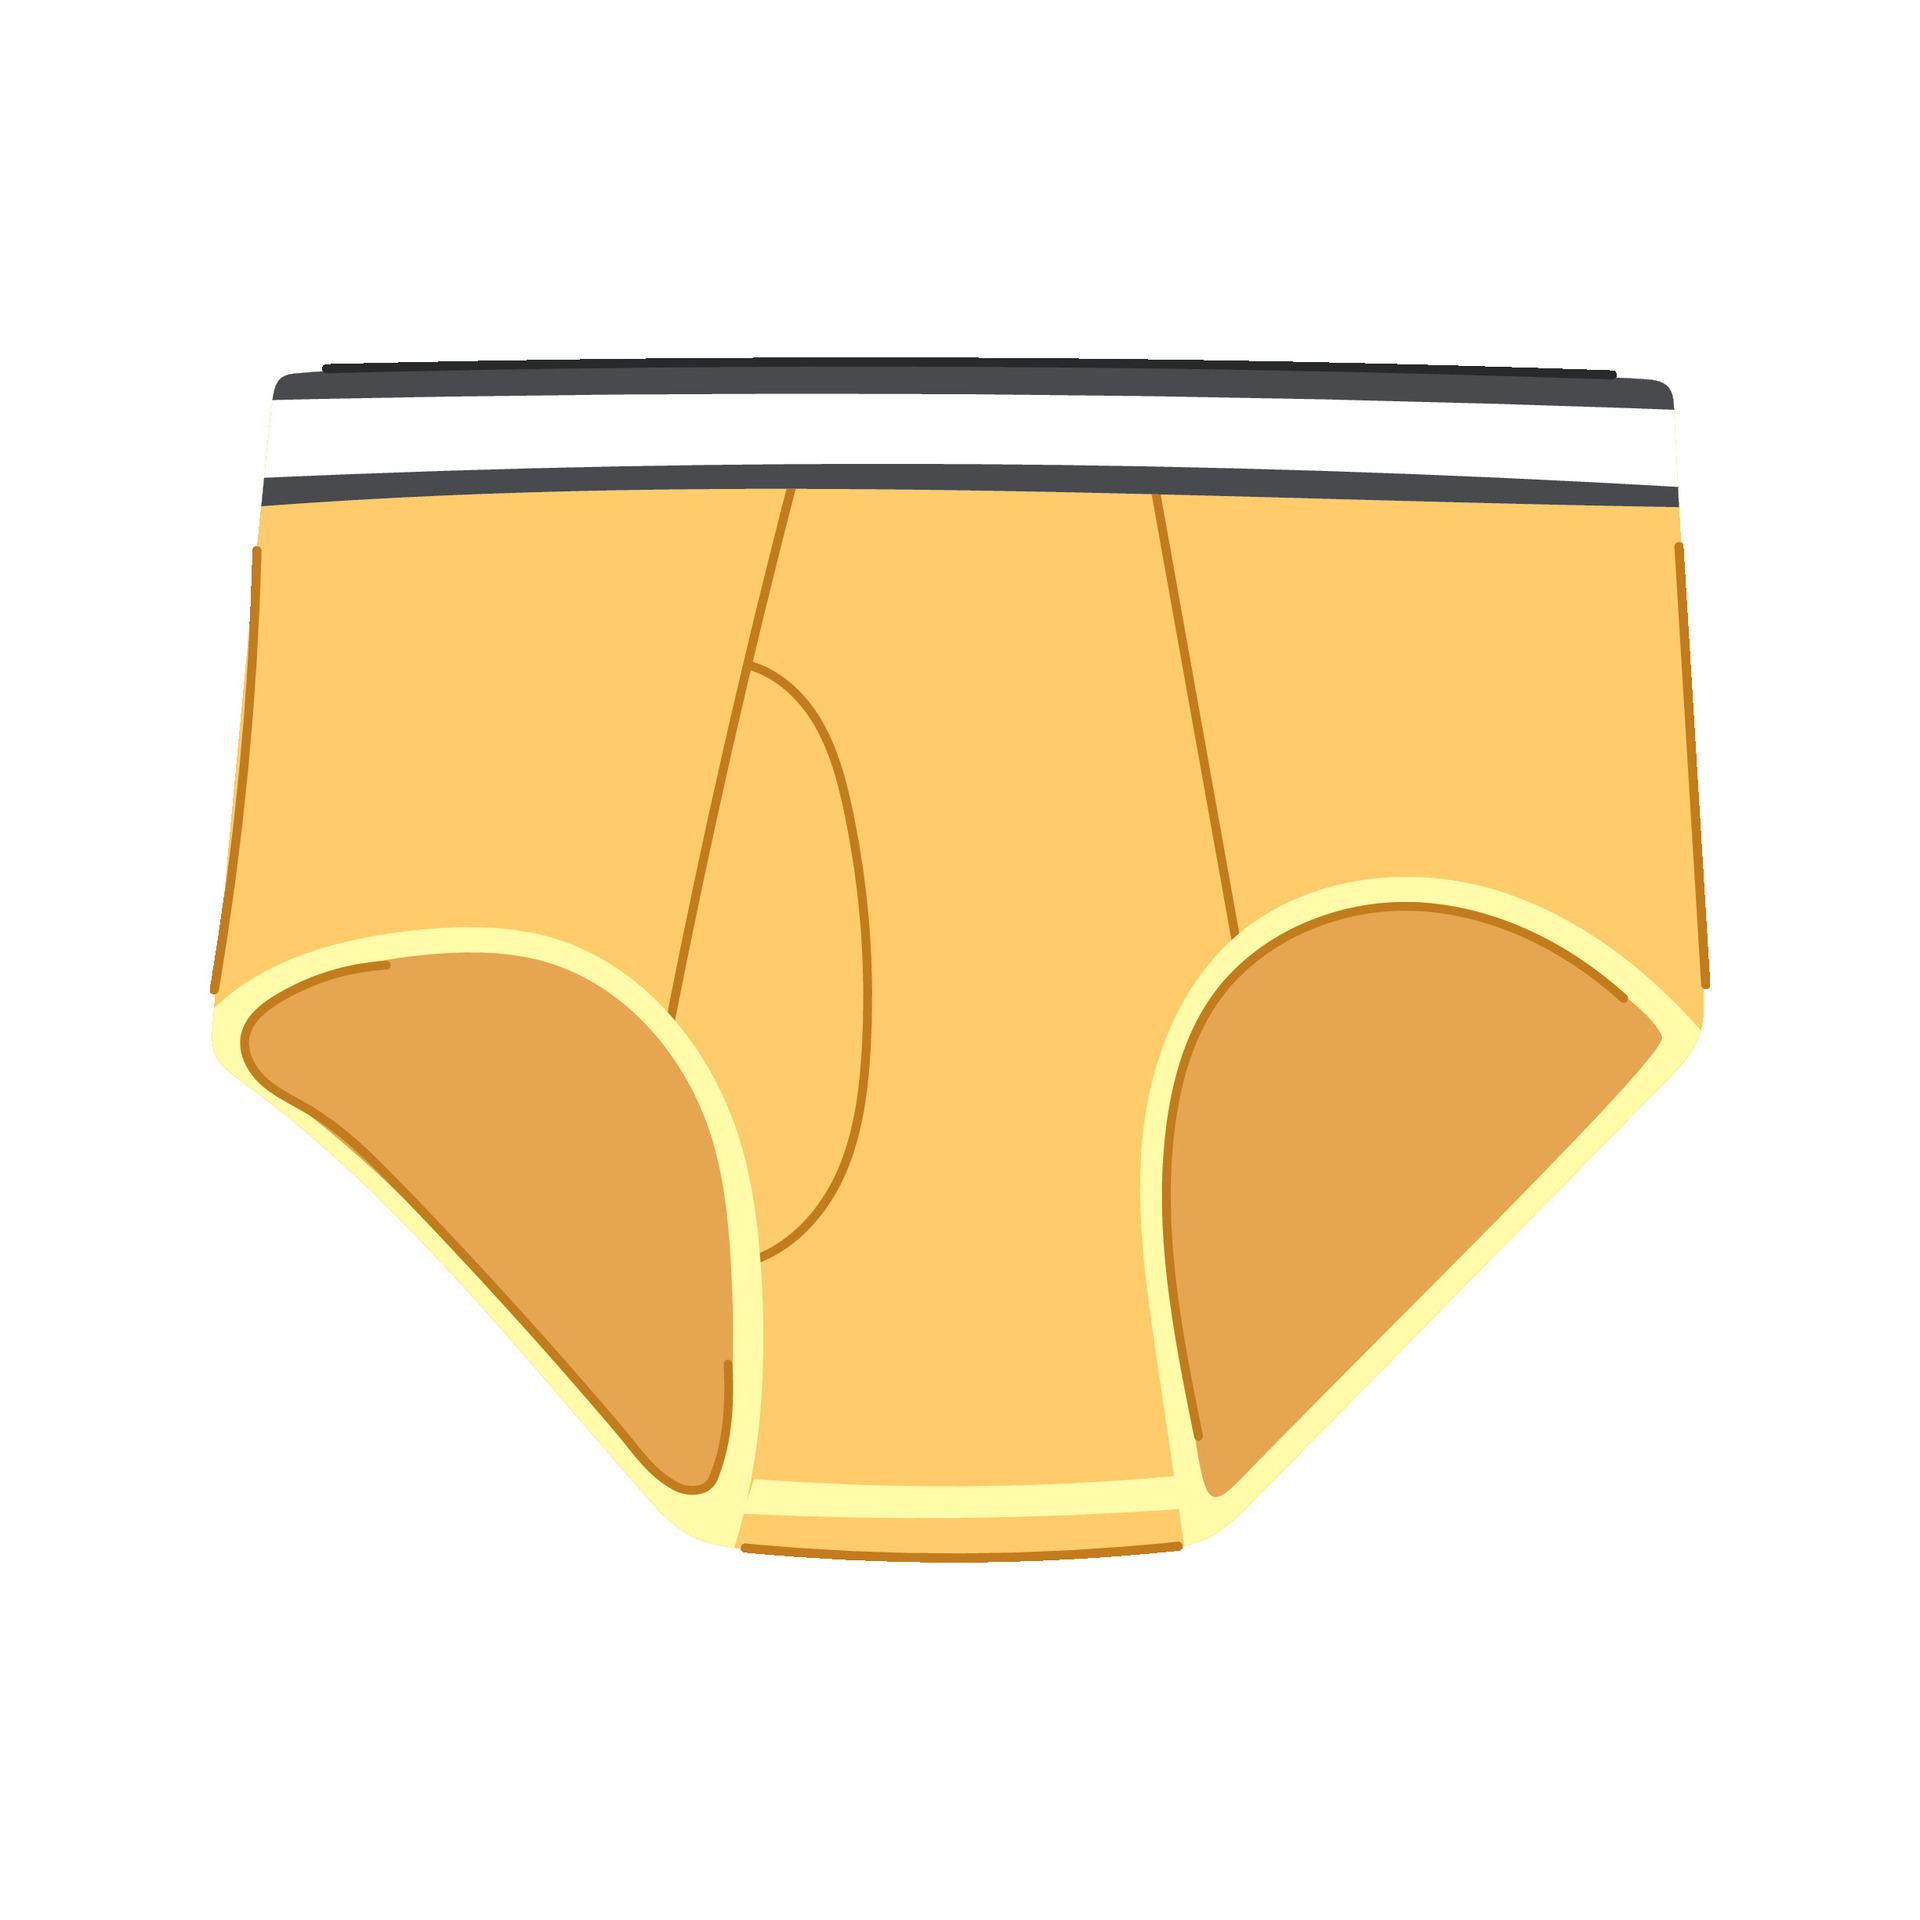 underpants underwear men cartoon vector illustration 25441608 Vector Art at  Vecteezy